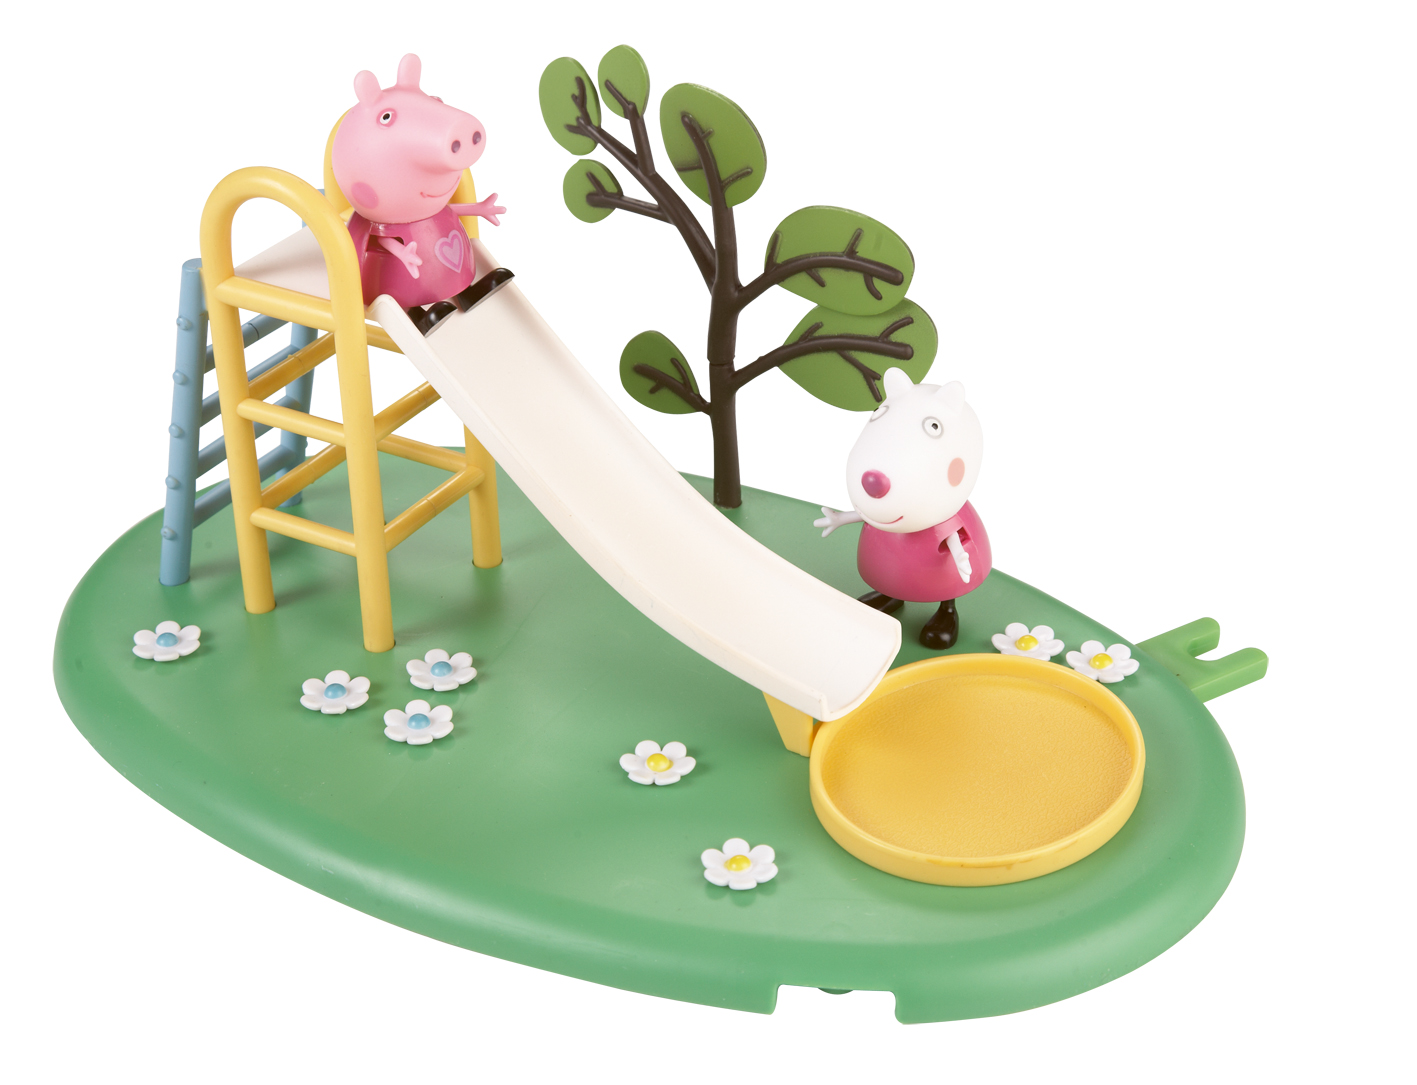 Peppa Pig Peppa - Playtime Fun Playsets - Slide